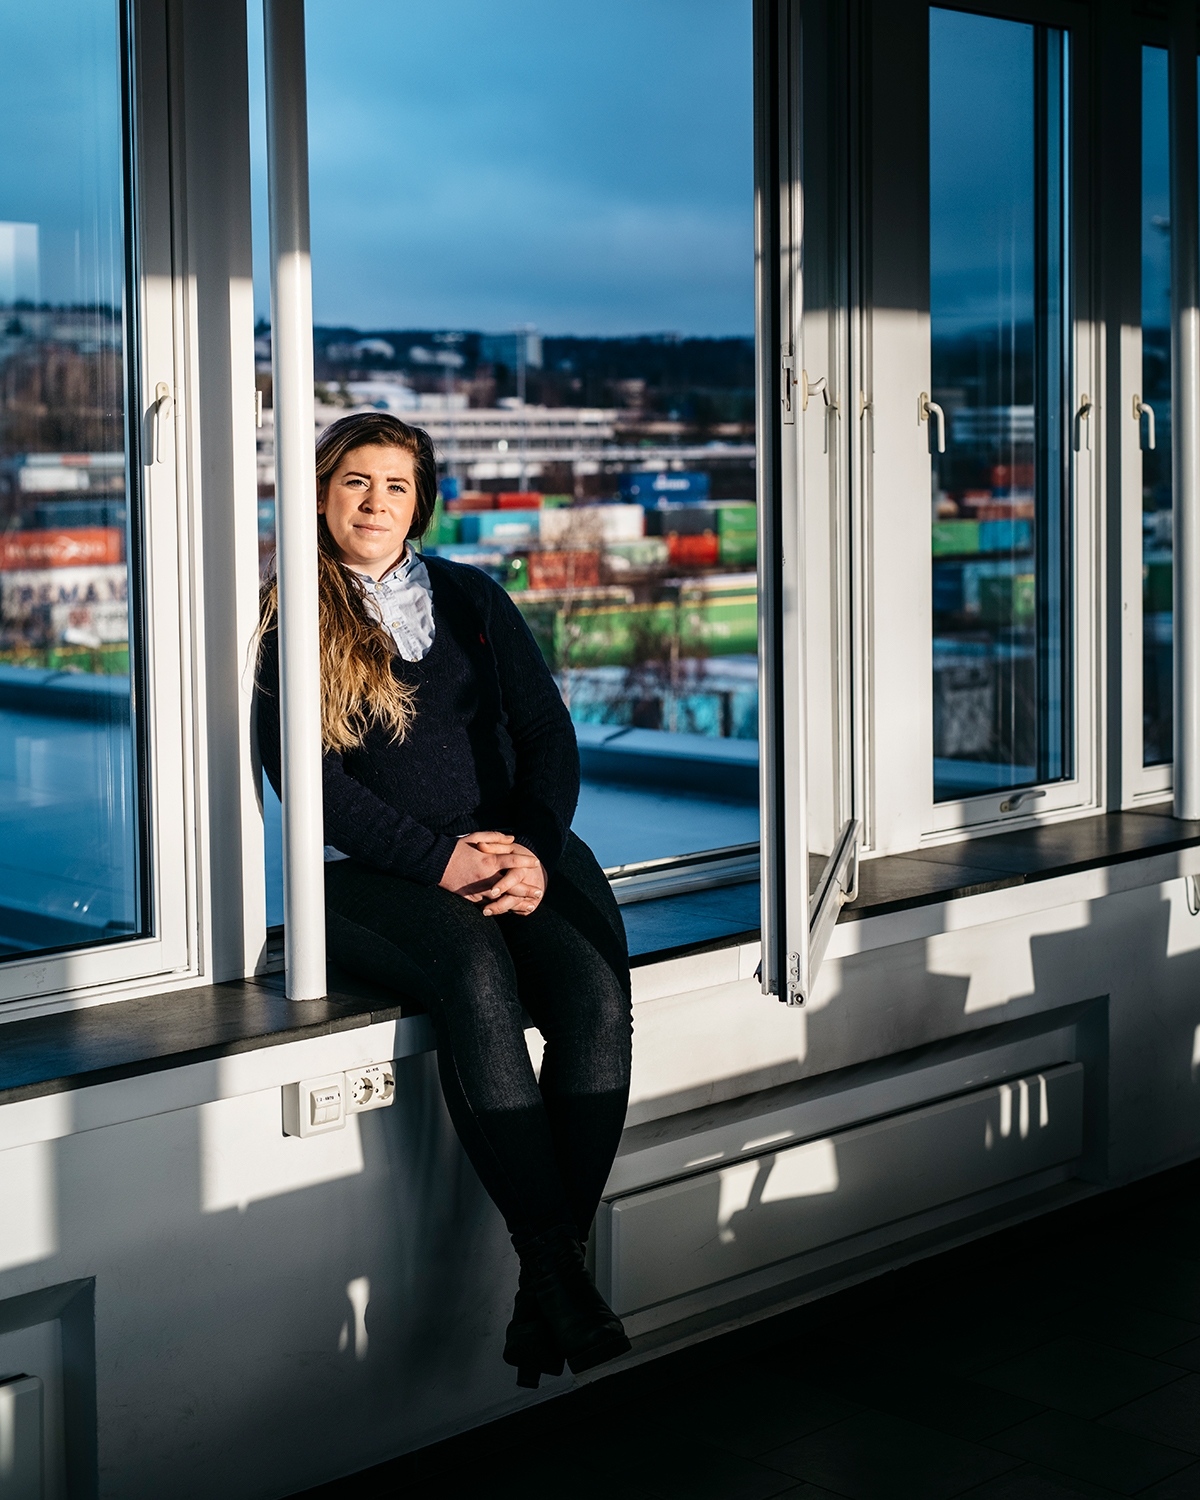 Bildet er tatt av Anna Svanberg som sitter i et vindu. Gjennom vinduet ser man sjø og containere på et konstruksjonsområde. Anna har på seg mørke bukser og mørk genser.